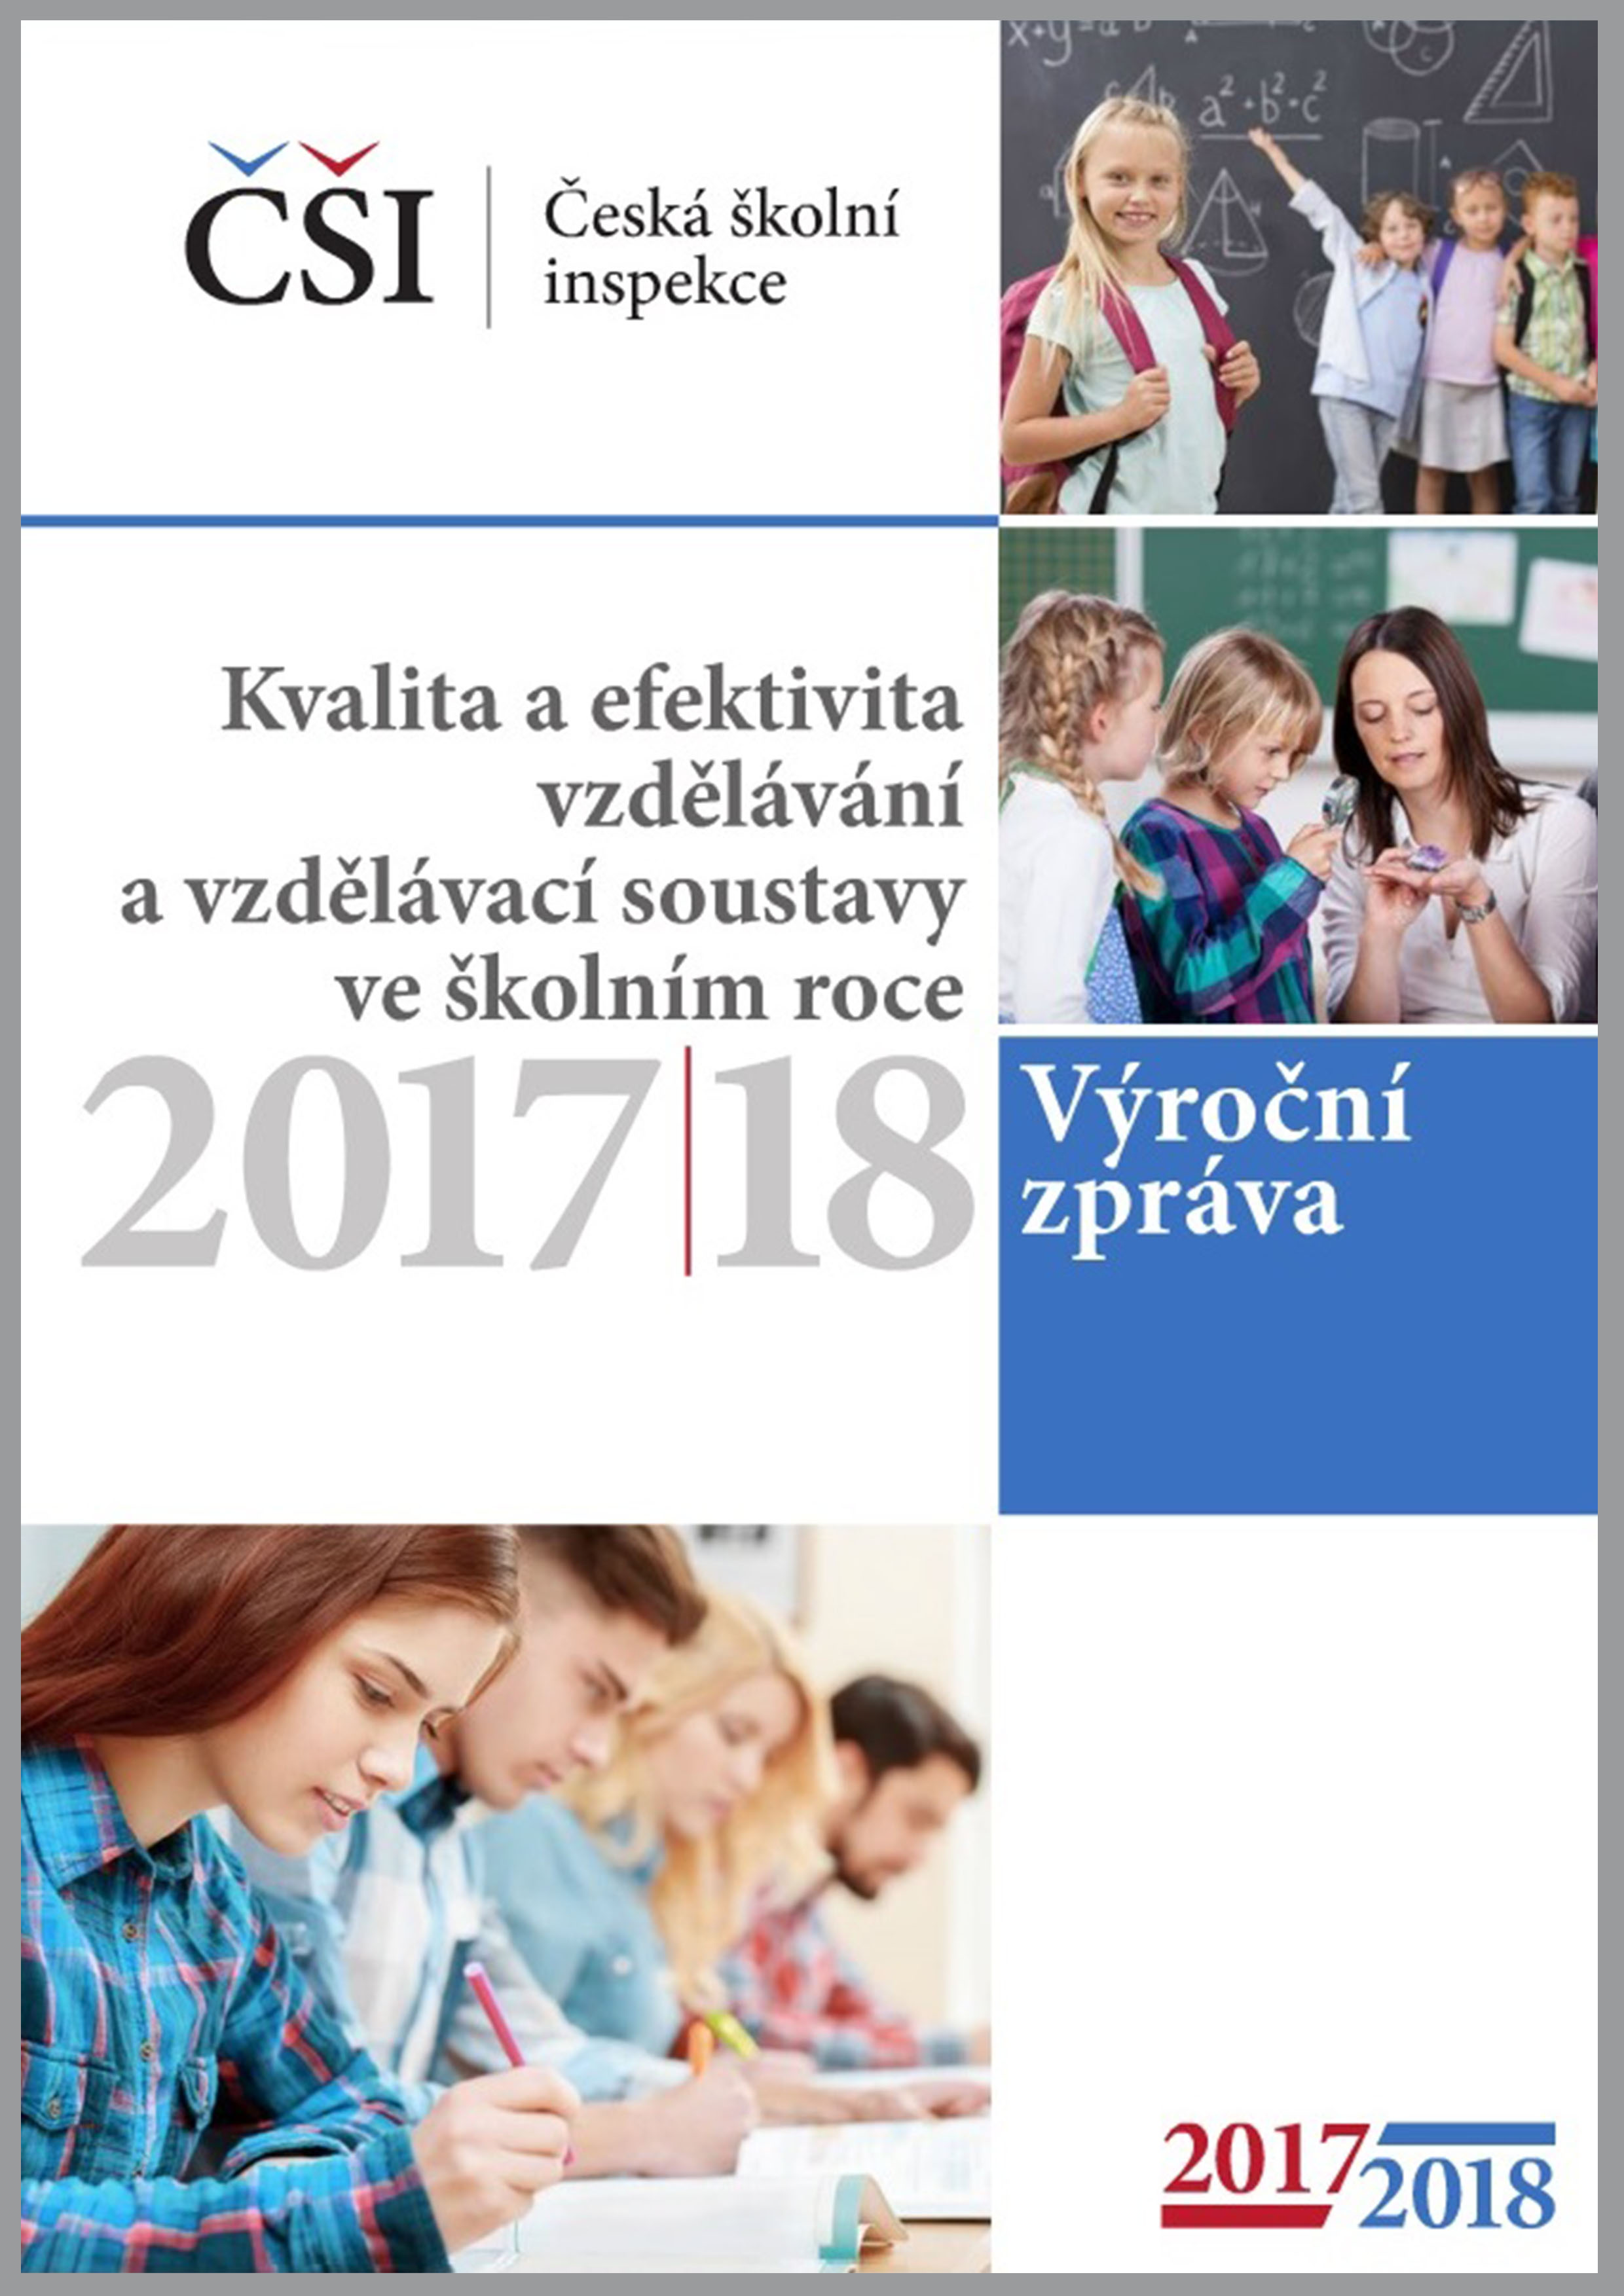 Kvalita a efektivita vzdělávání a vzdělávací soustavy ve školním roce 2017/2018 - výroční zpráva ČŠI